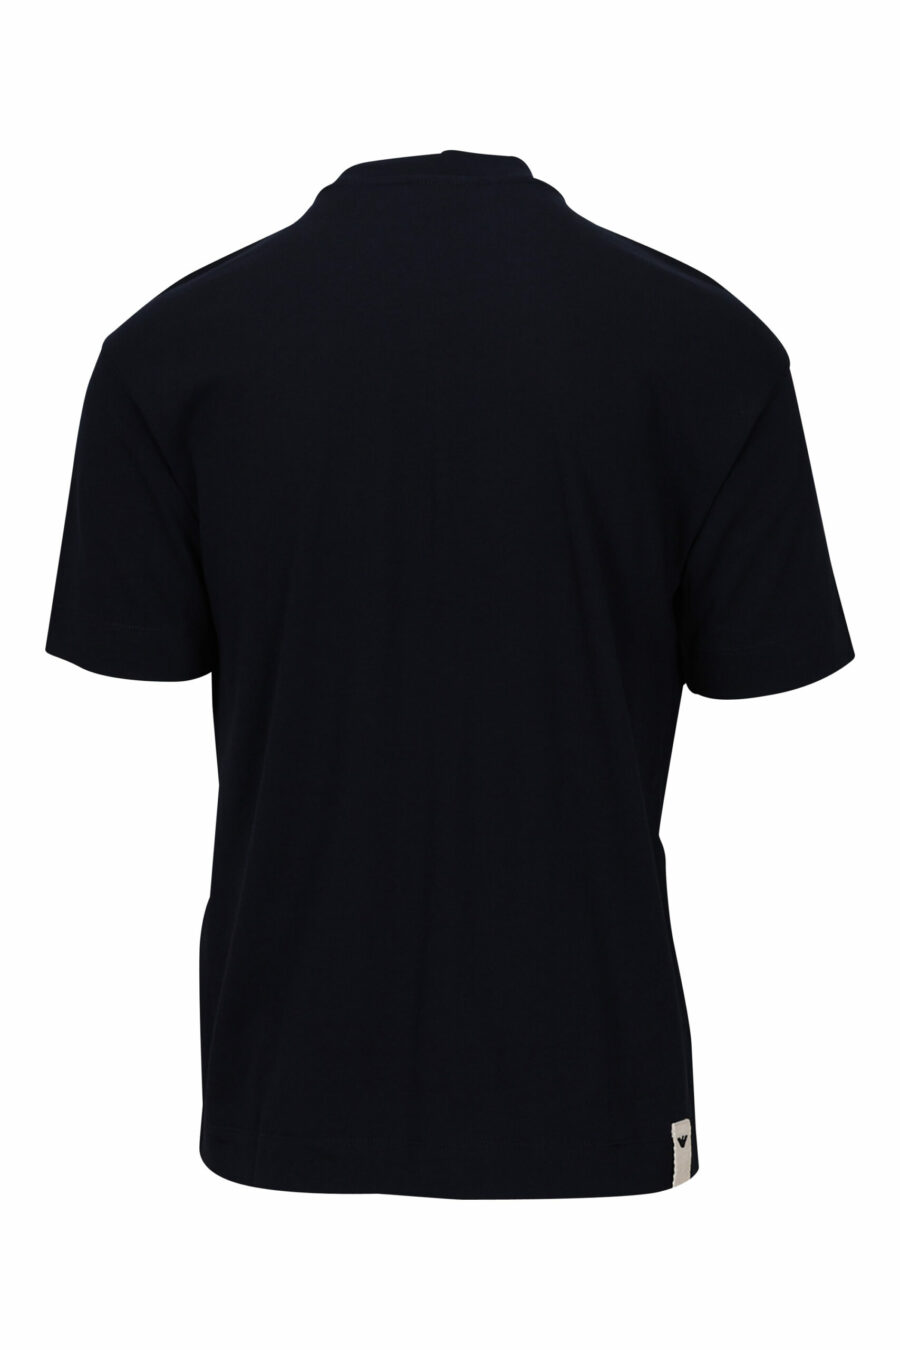 T-shirt bleu marine avec logo centré - 8057767459796 1 scaled